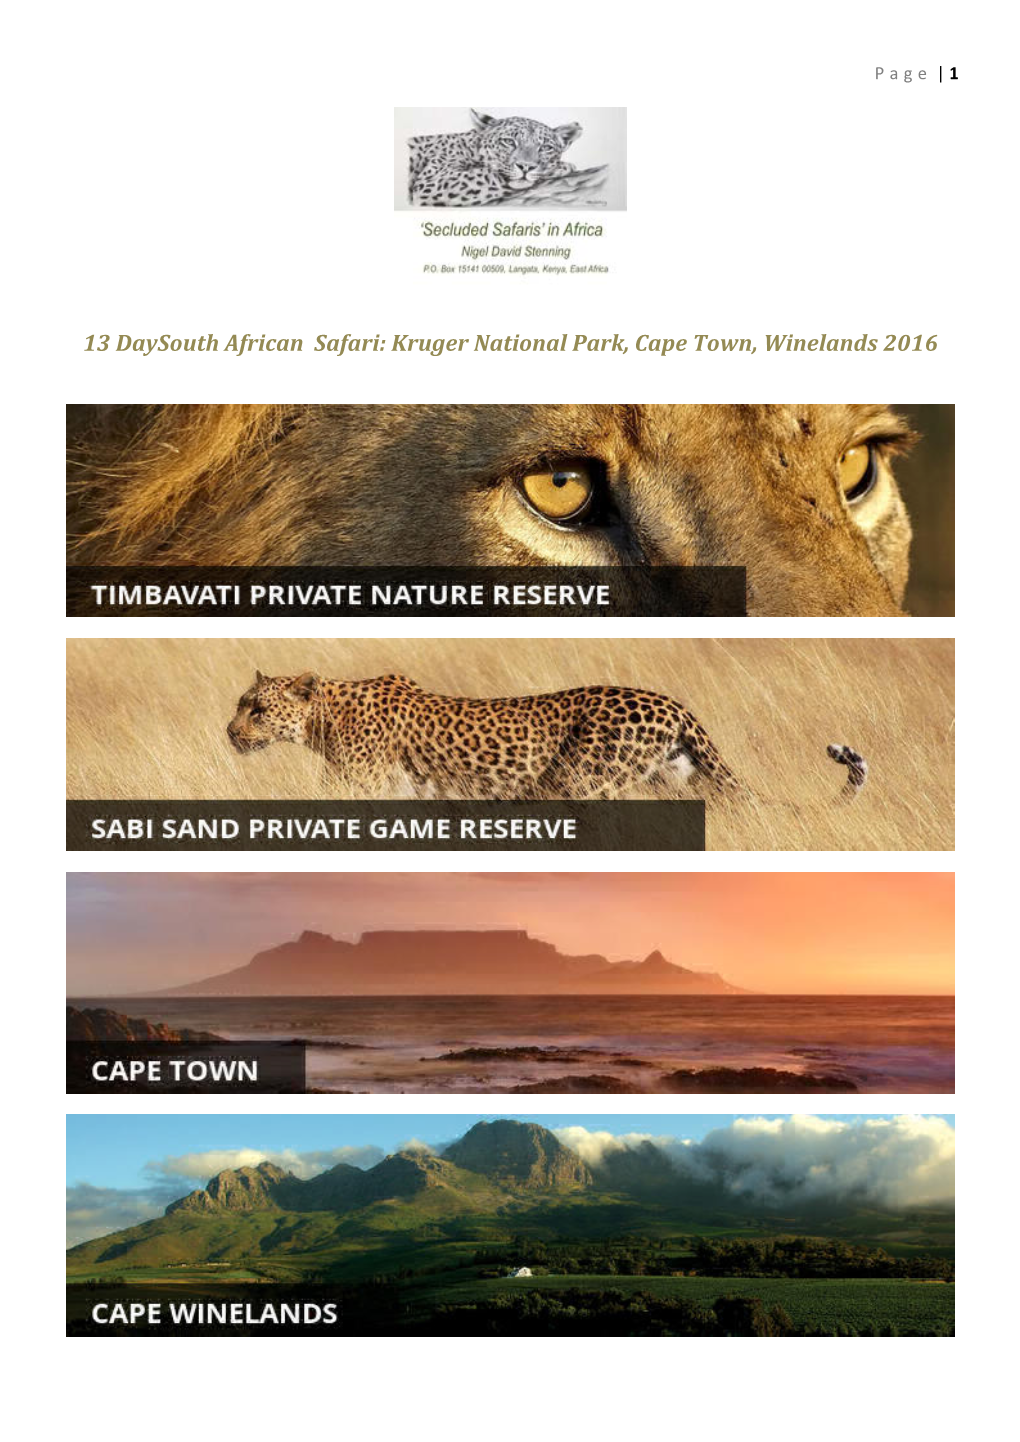 Kruger National Park, Cape Town, Winelands 2016